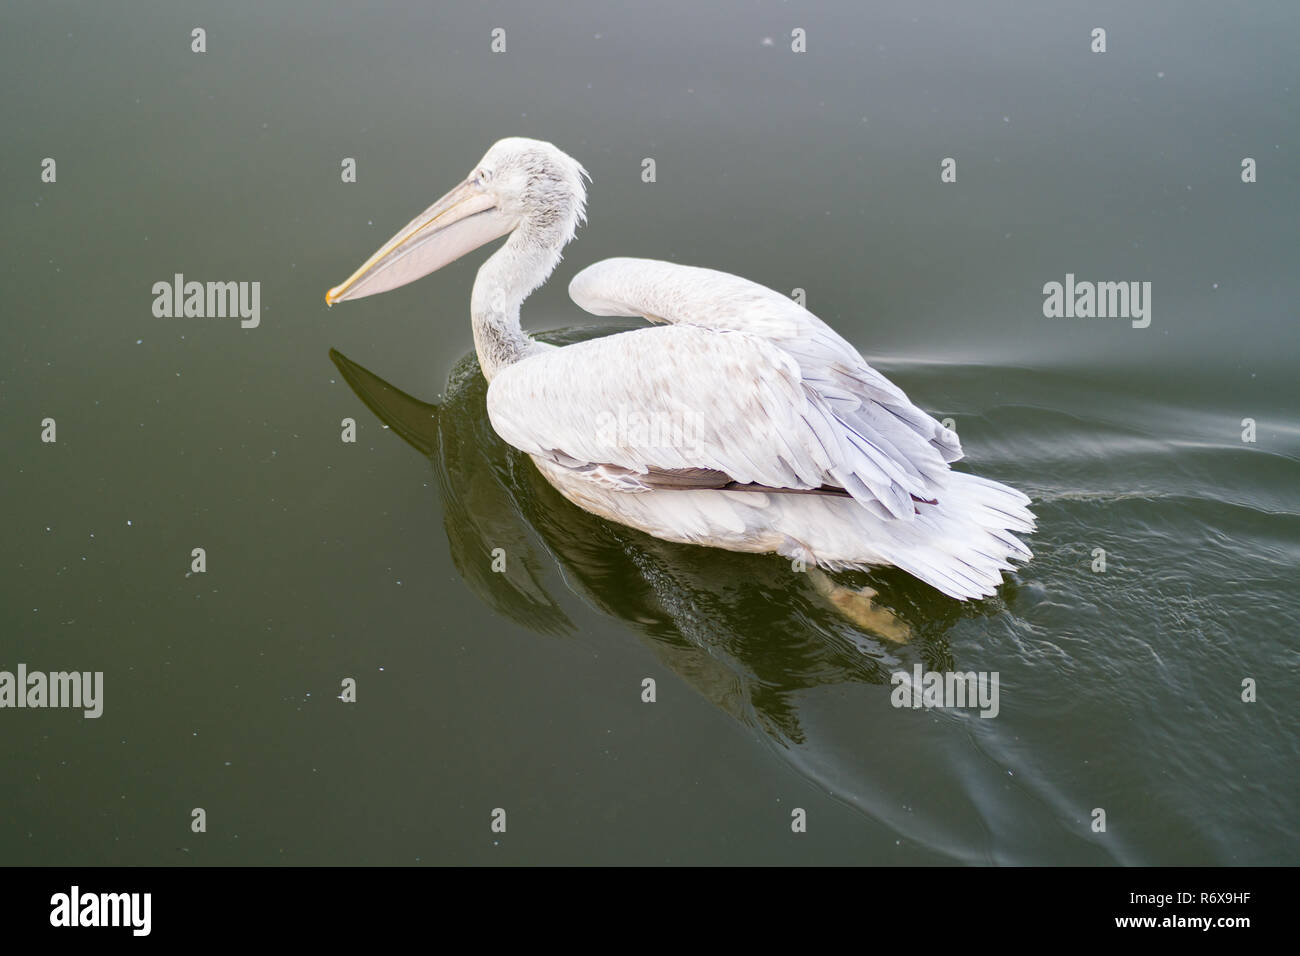 Pelícano blanco nadando a través del espejo de agua del lago Foto de stock